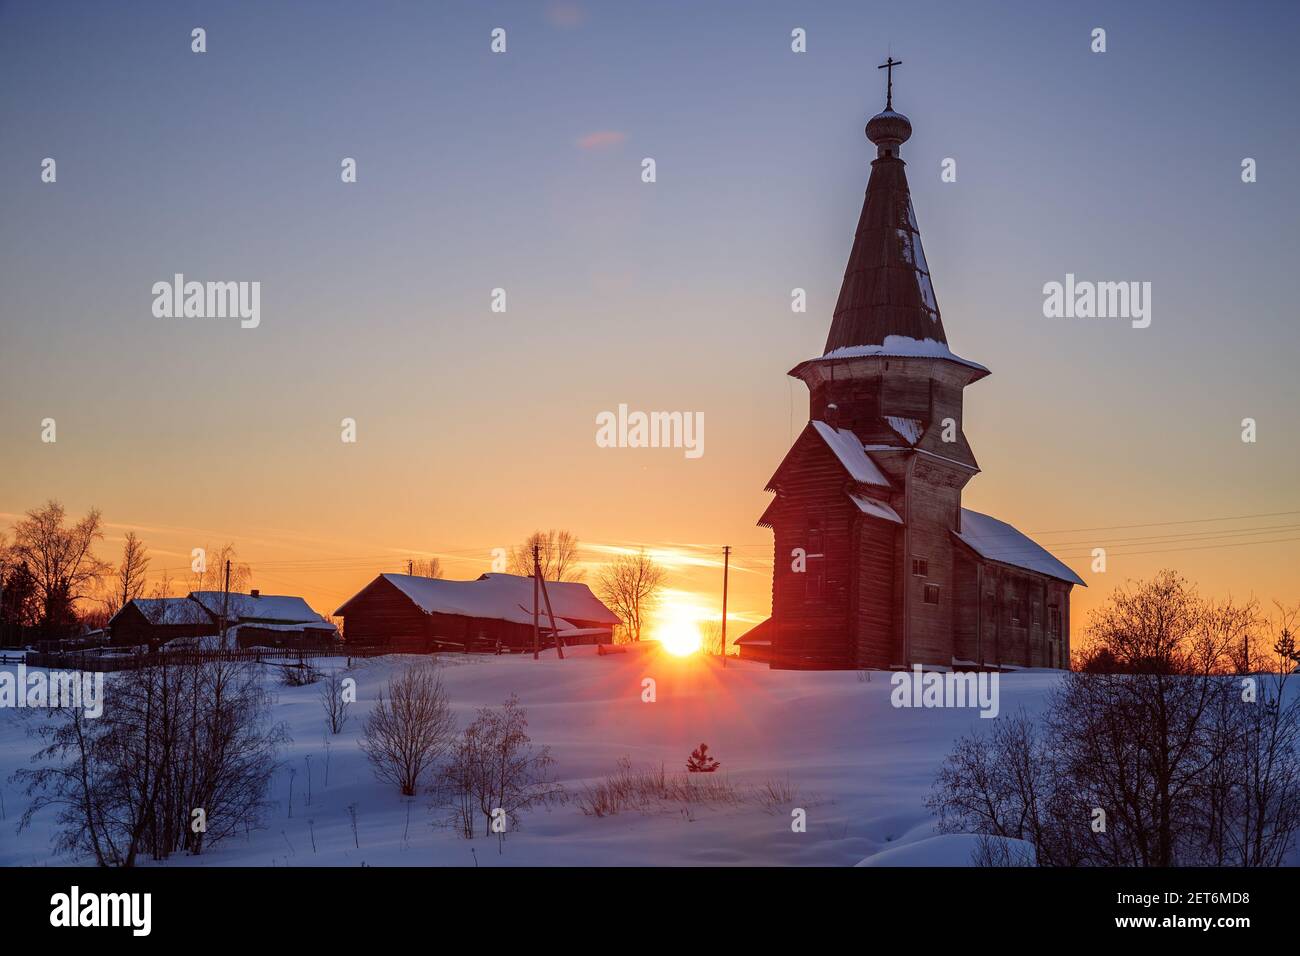 Paesaggio invernale rurale tramonto. La vecchia chiesa russa in legno di Elia il Profeta nel villaggio di Saminsky Pogost, regione di Vologda, Russia Foto Stock